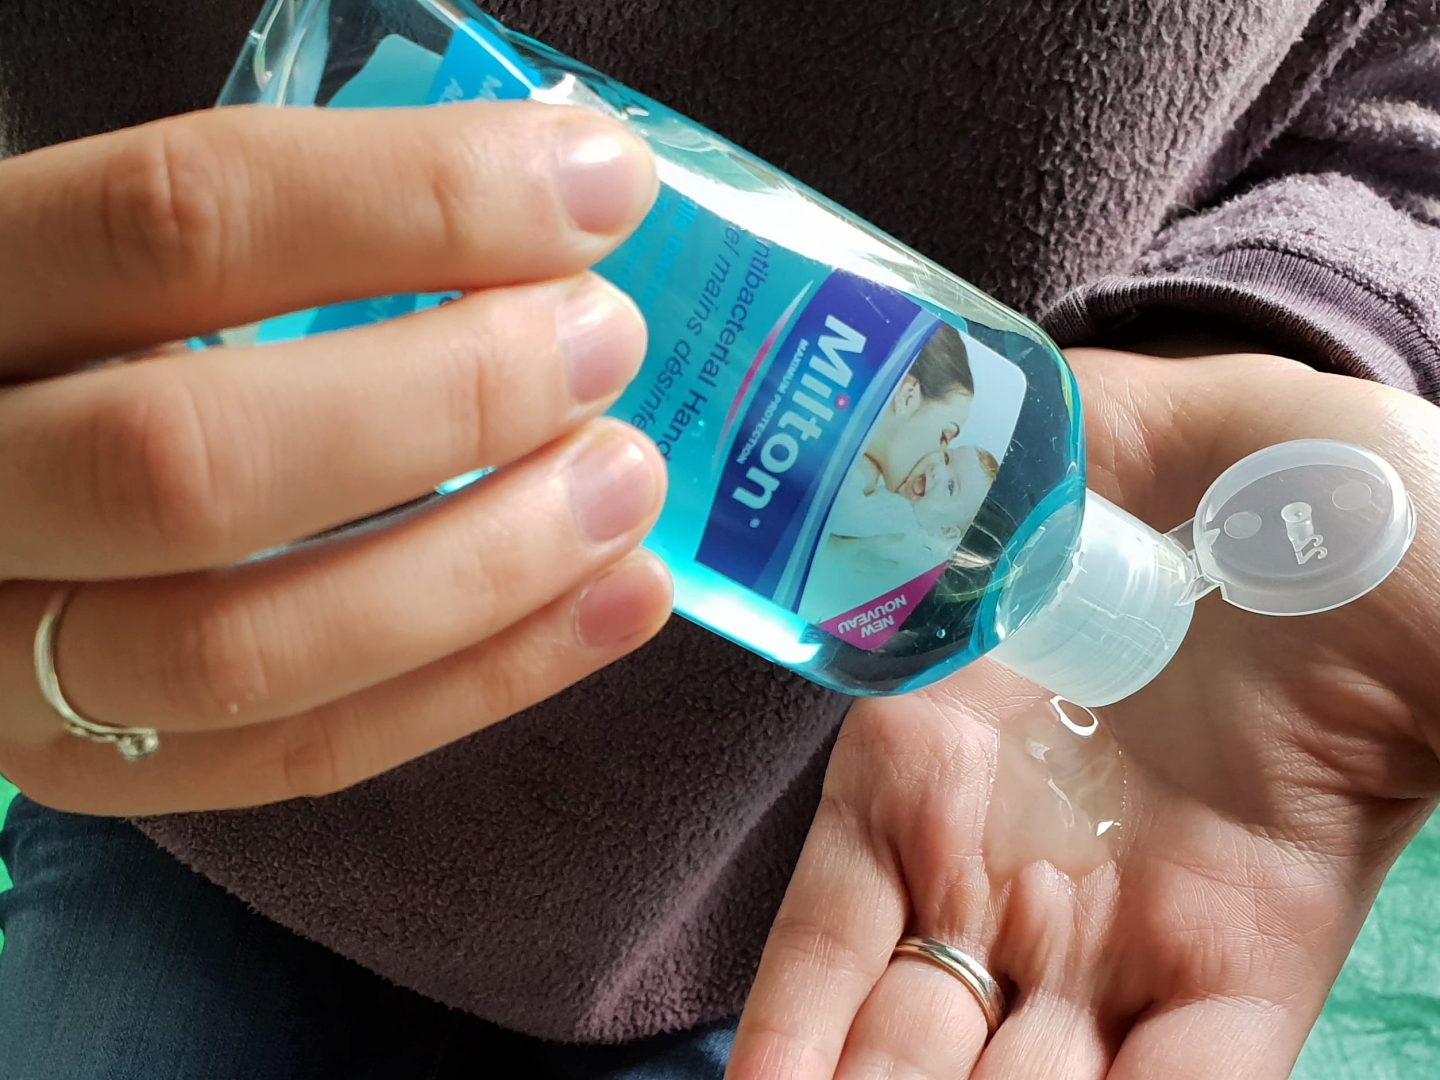 Milton anti-bacterial hand gel camping